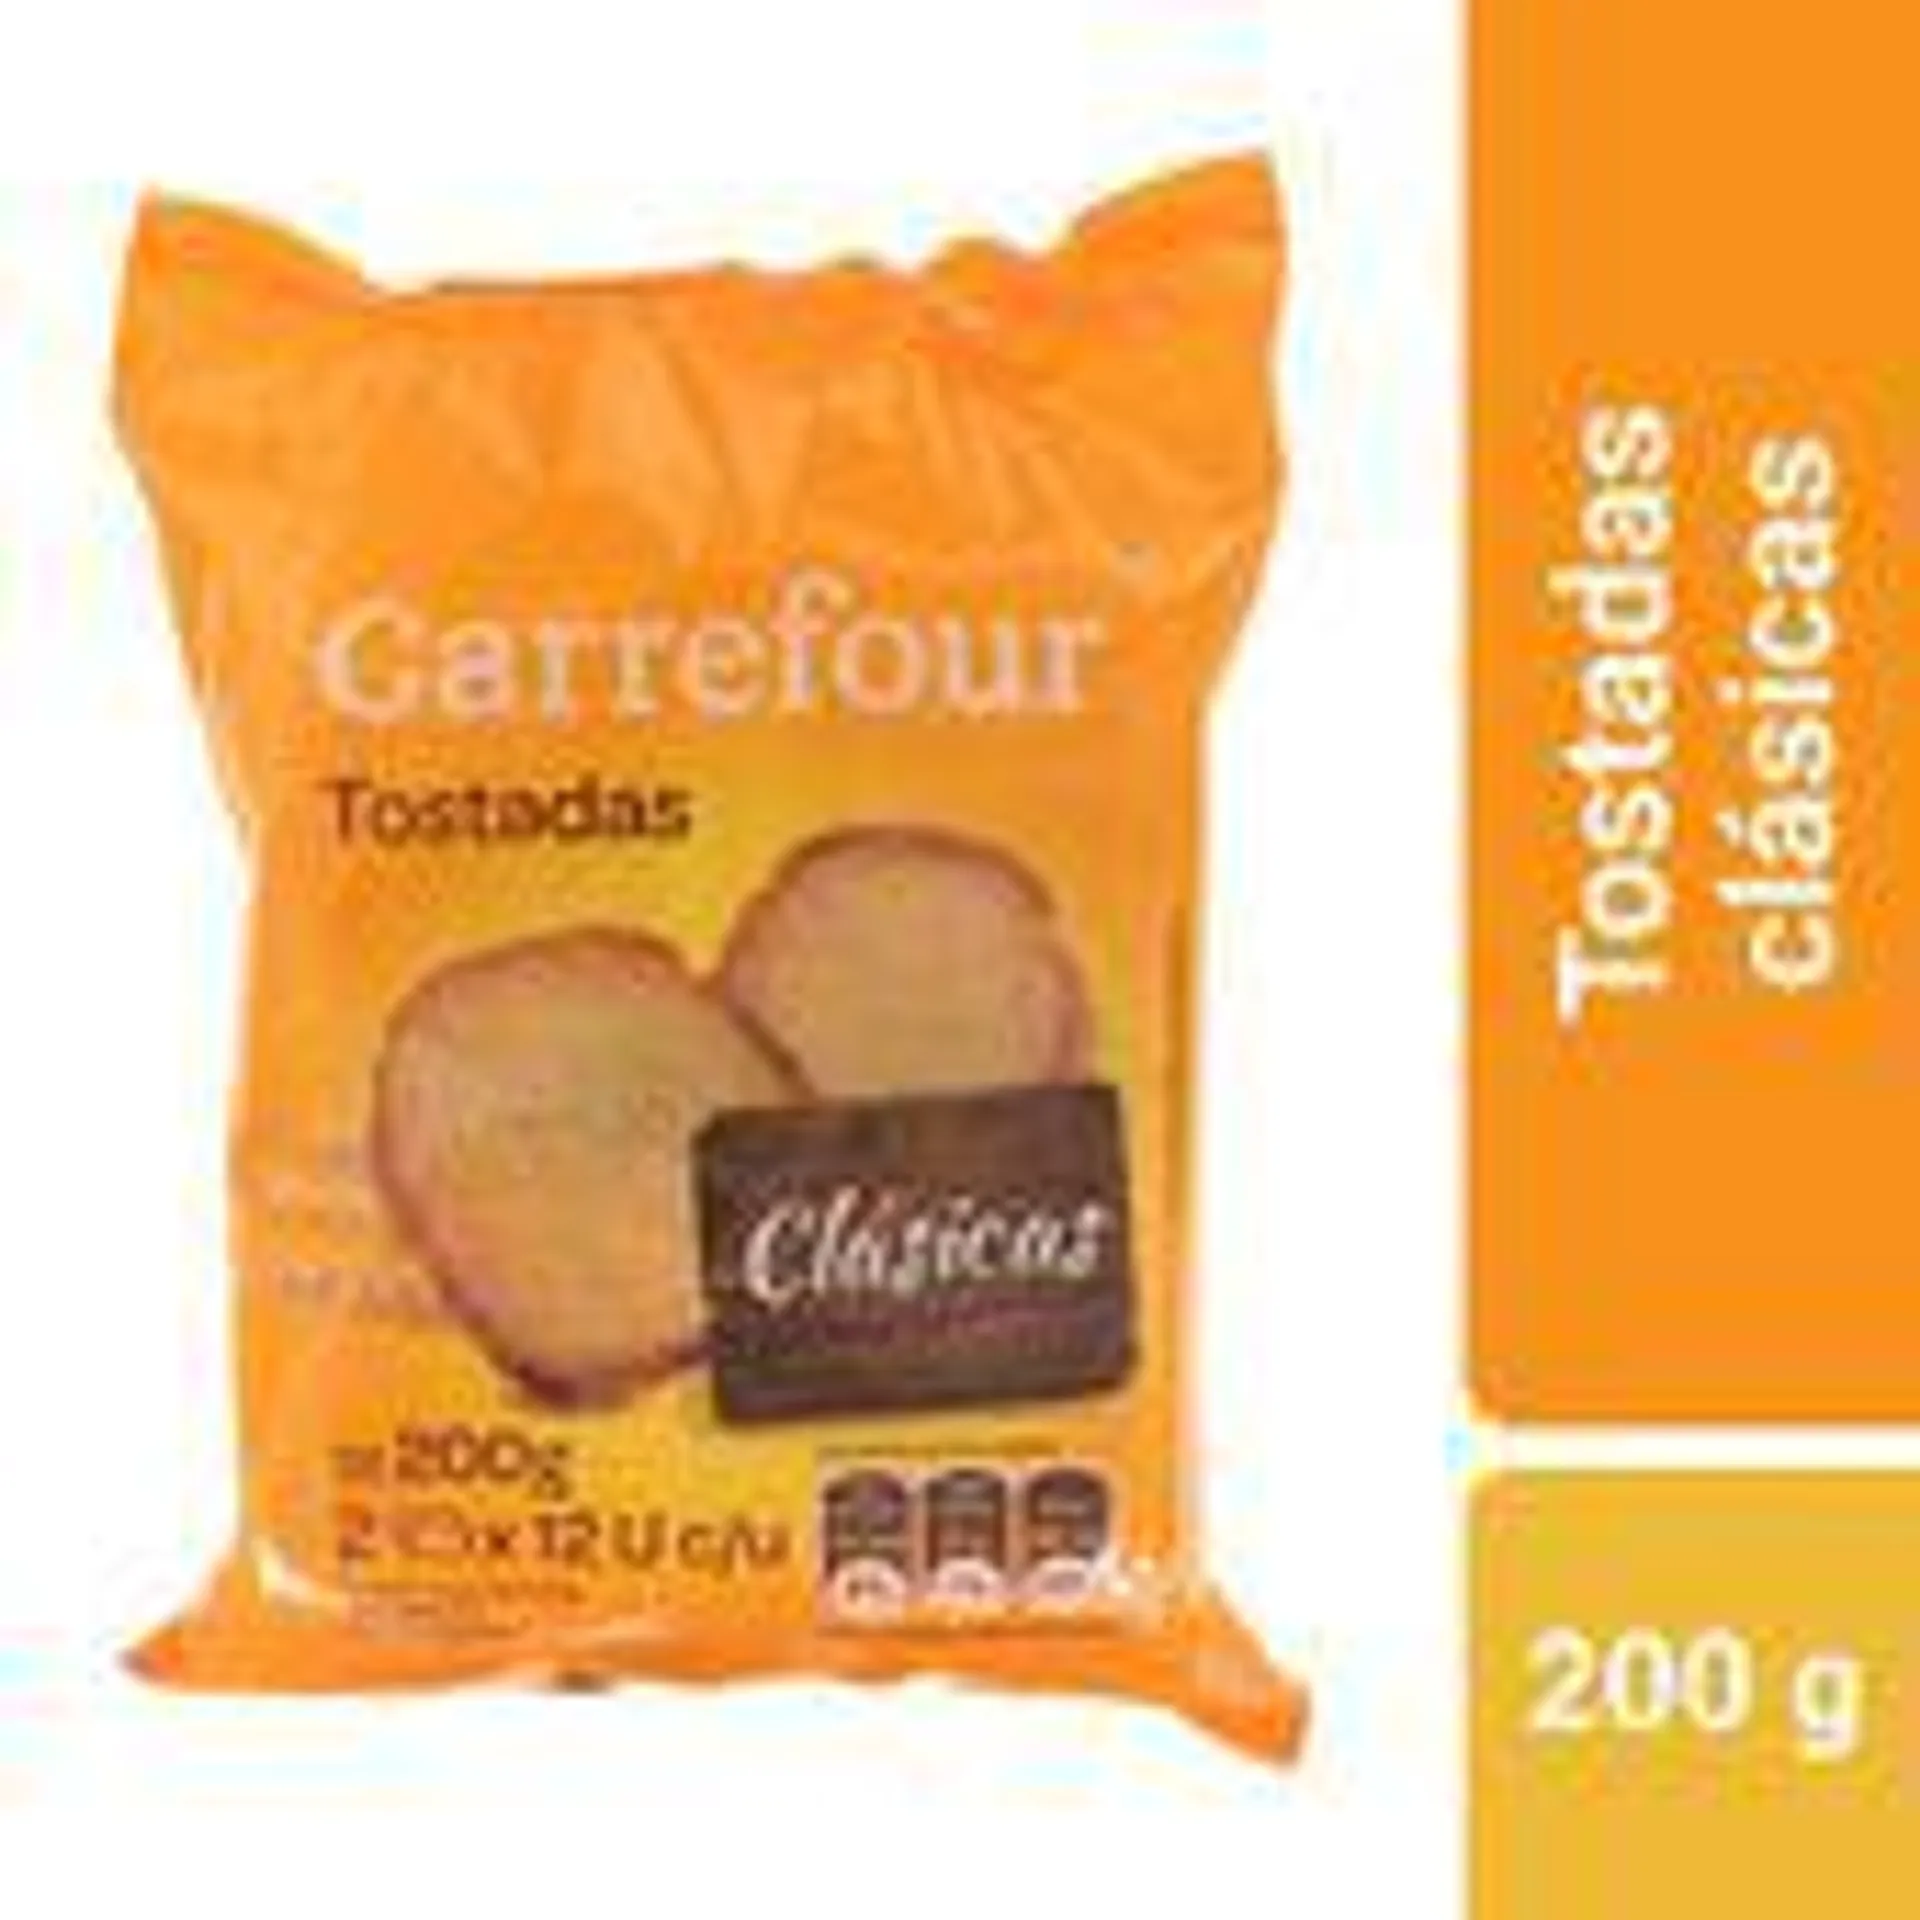 Tostadas clásicas Carrefour 200 g.